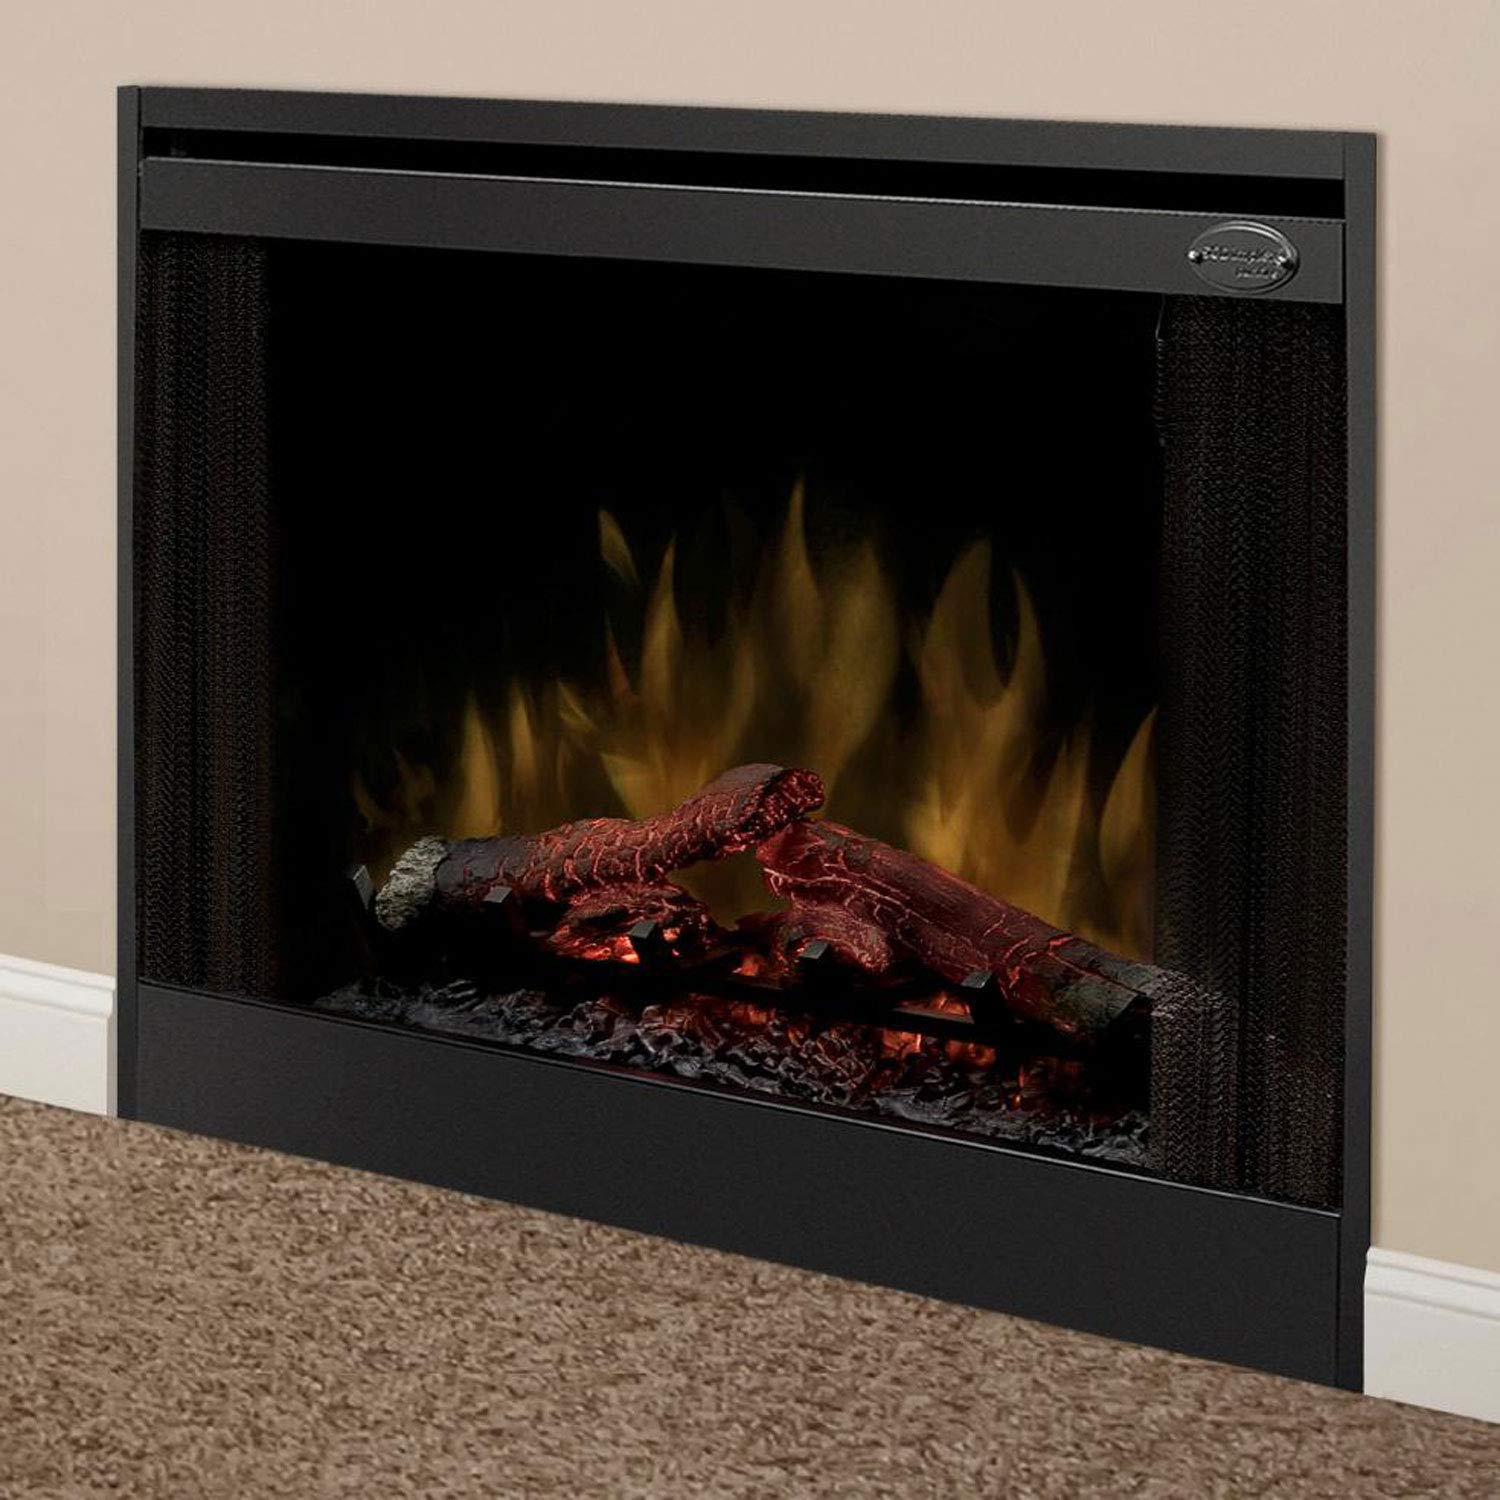 Dimplex BFSL33 Fireplace